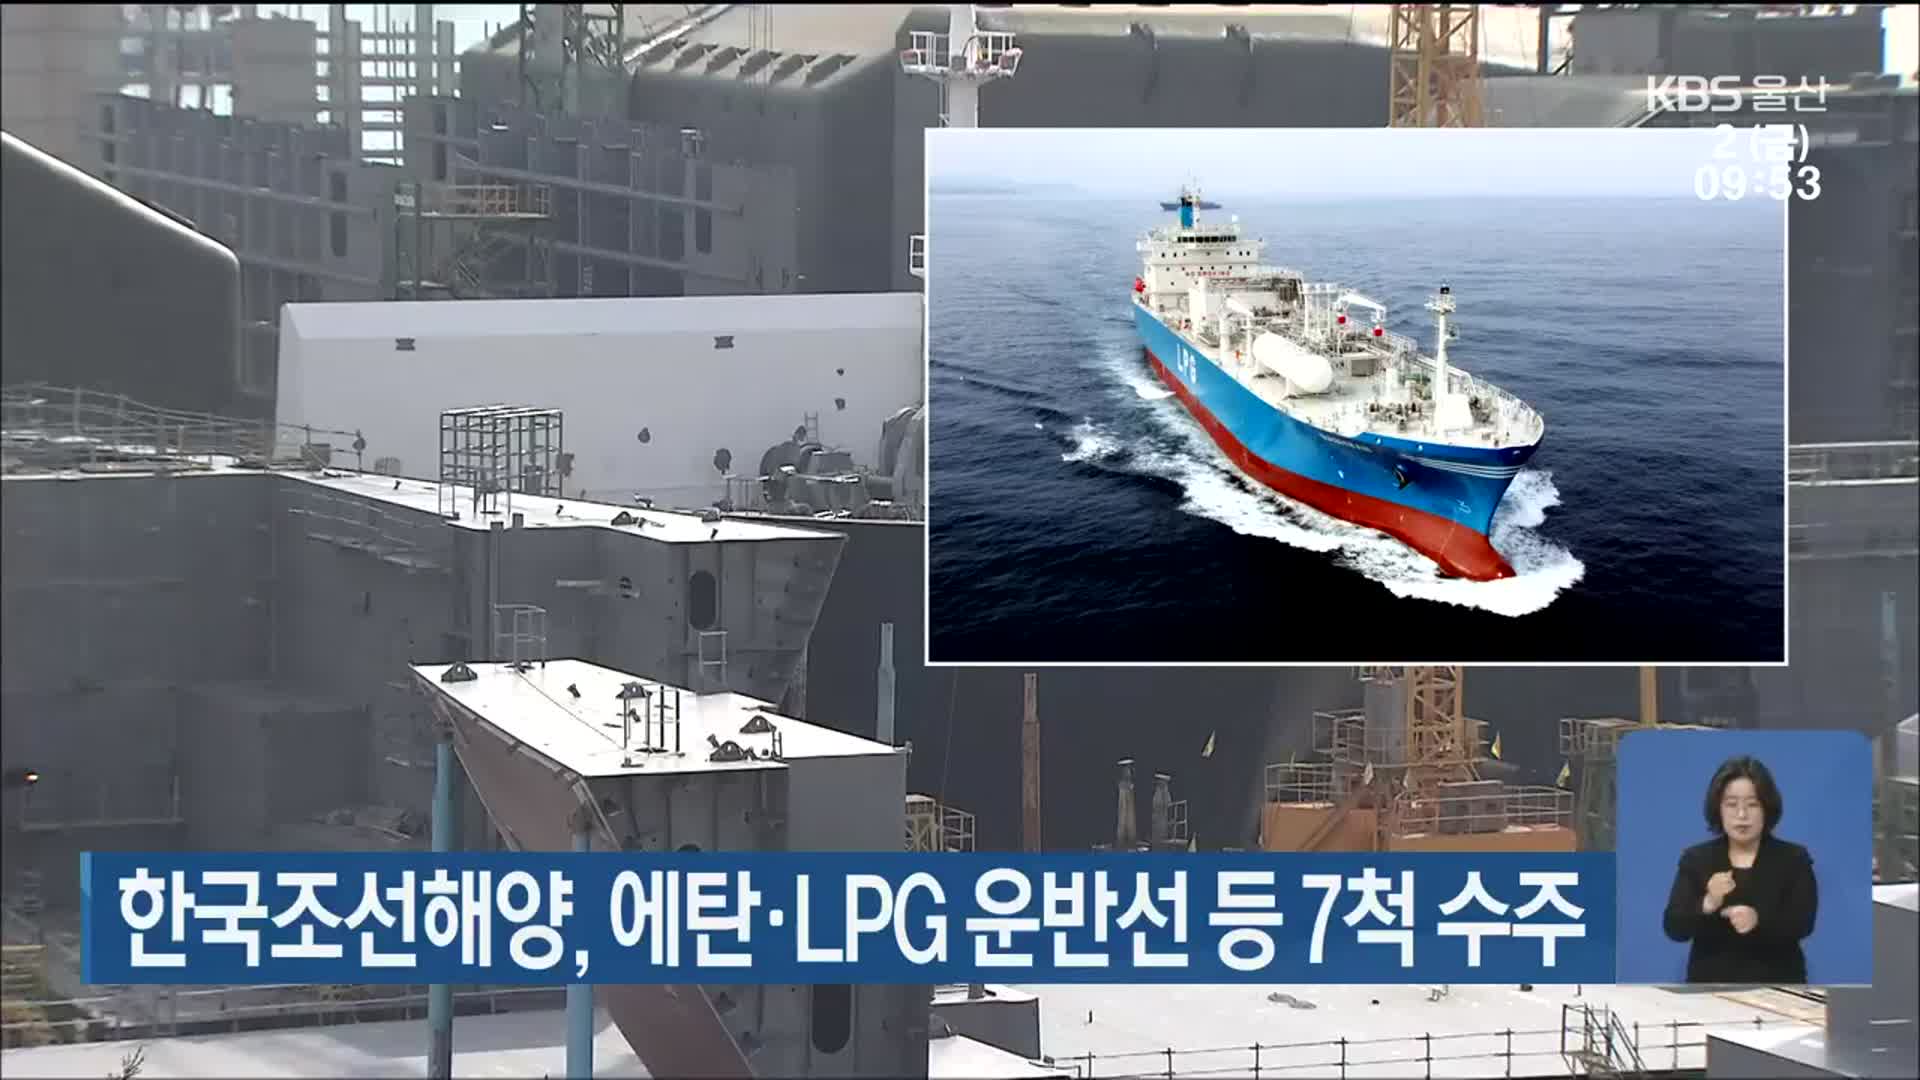 한국조선해양, 에탄·LPG 운반선 등 7척 수주